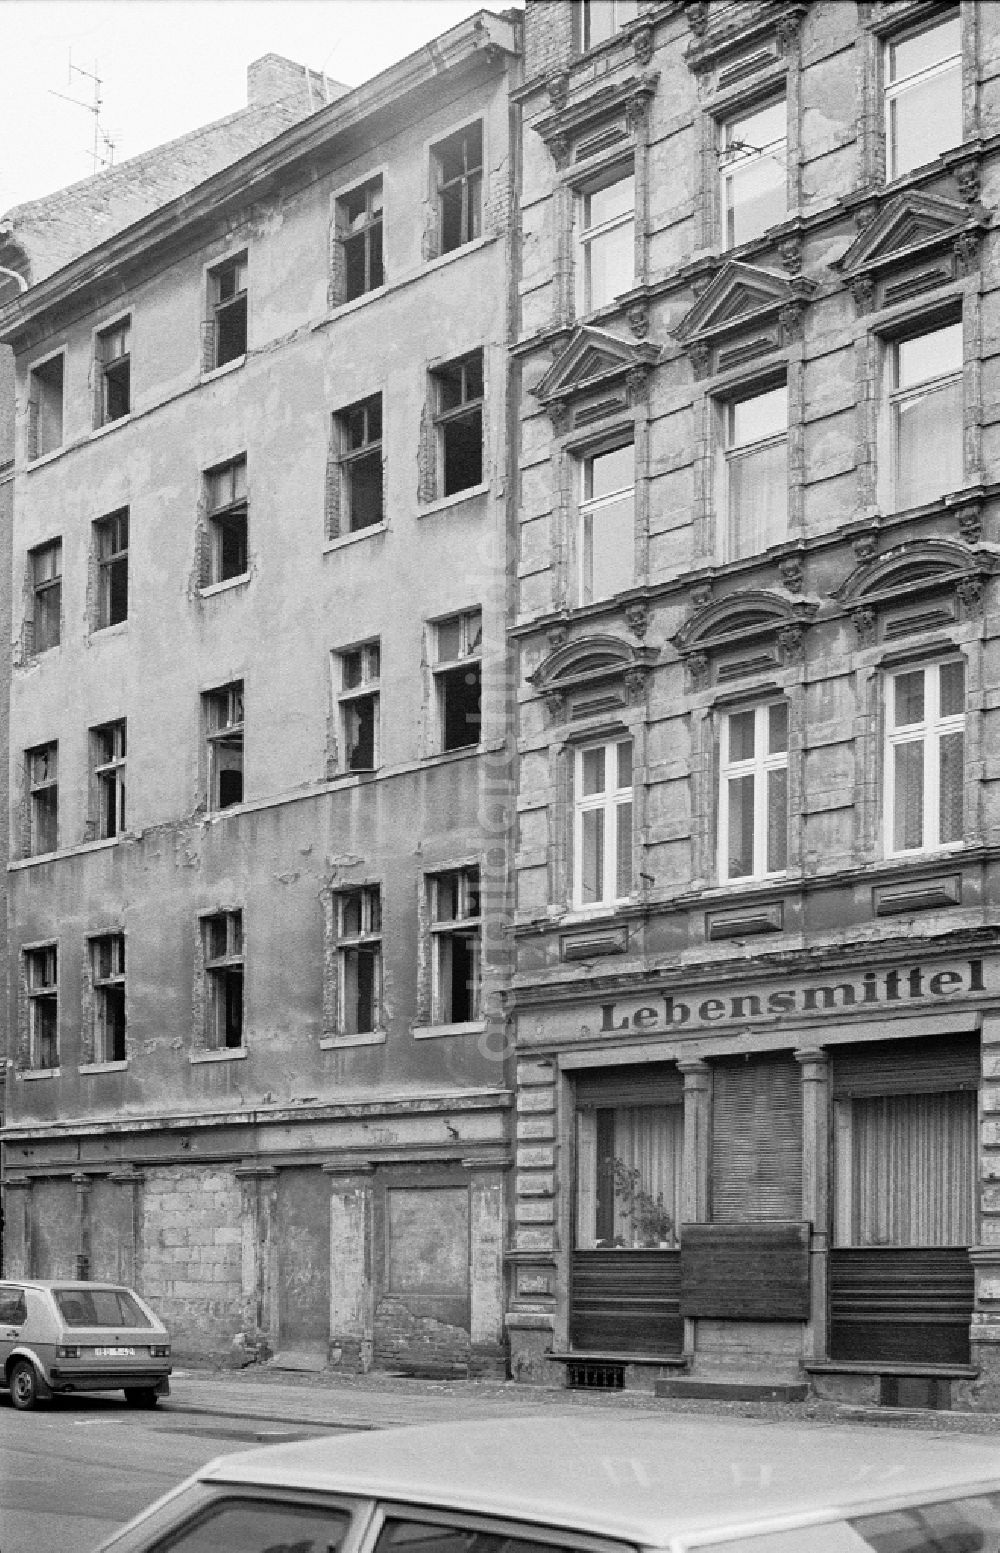 DDR-Fotoarchiv: Berlin - Schriftzug eines Ladengeschäftes Lebensmittel im Ortsteil Friedrichshain in Berlin in der DDR